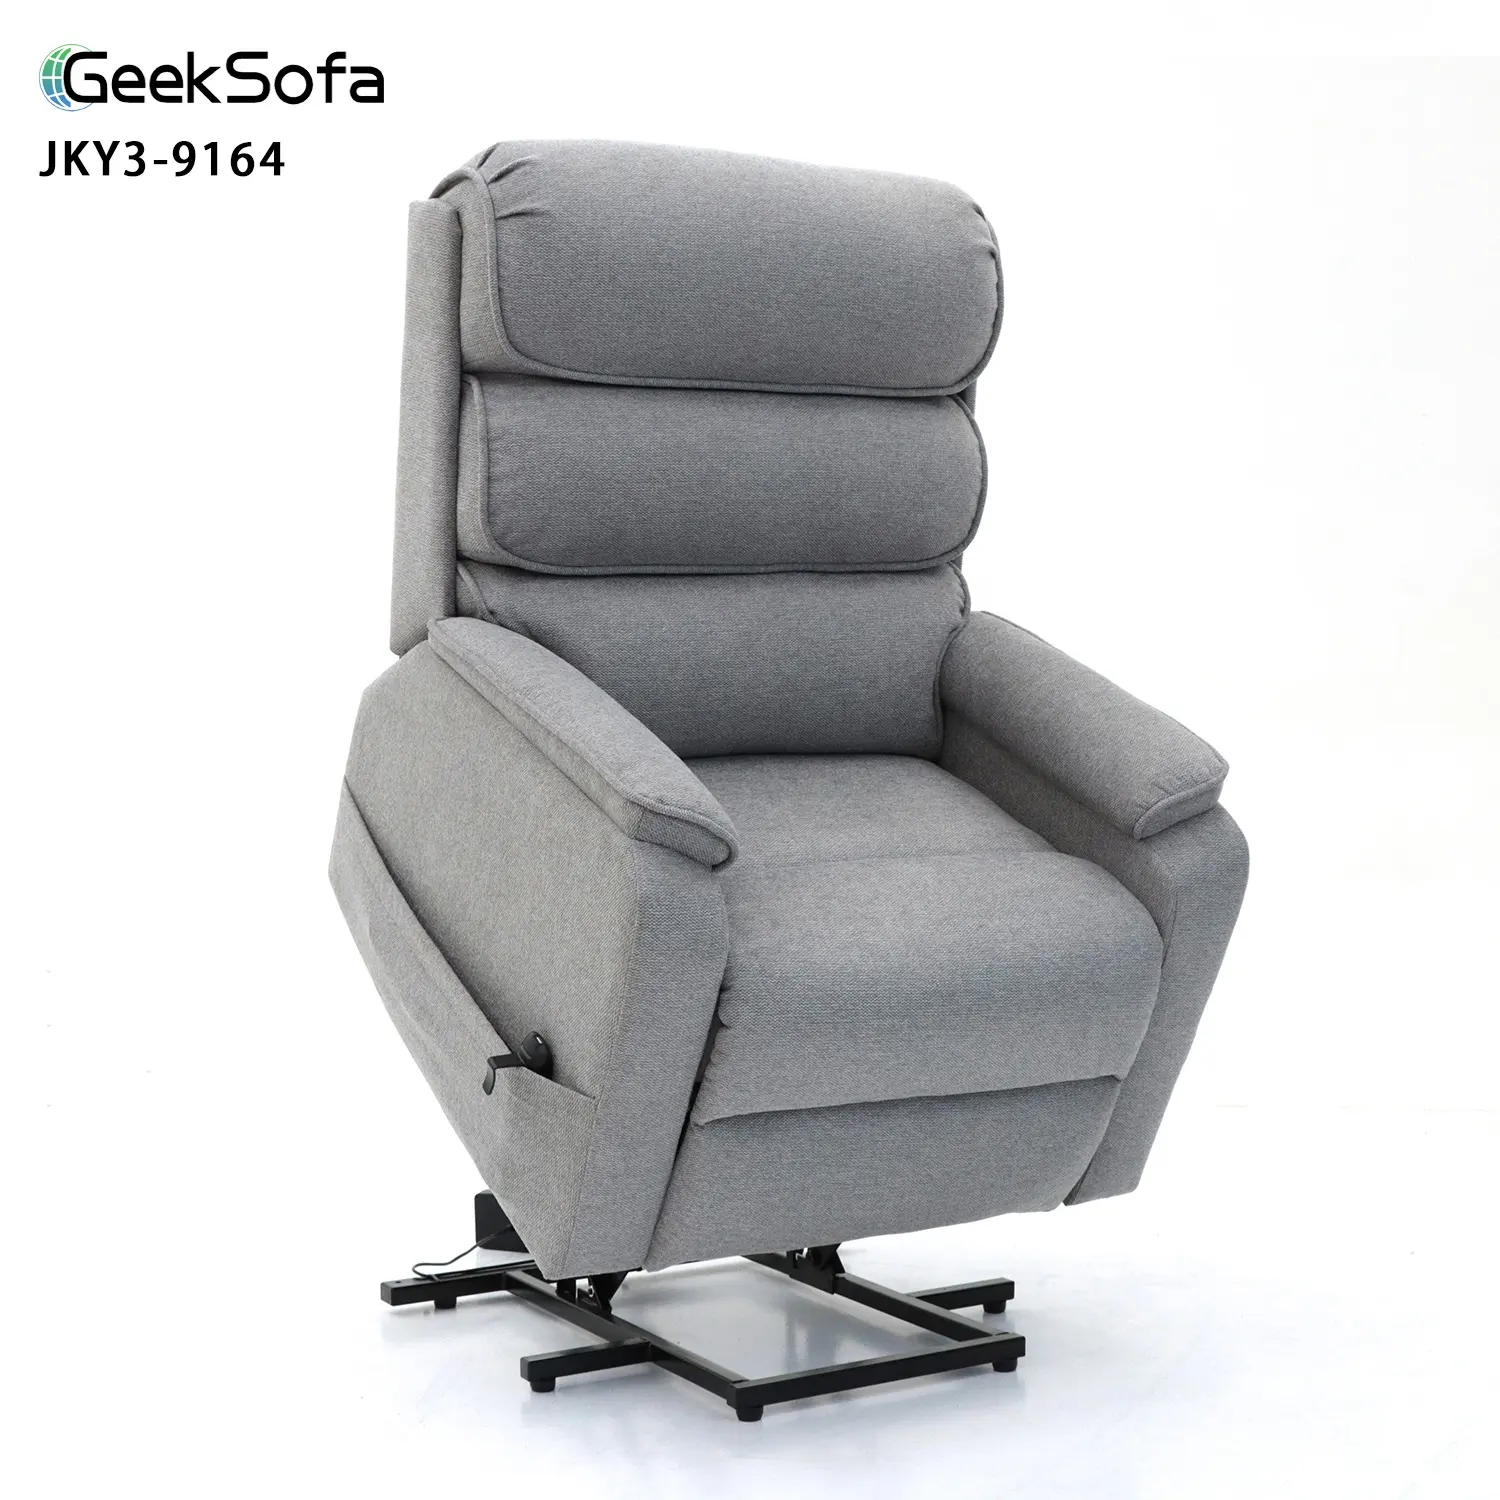 Geeksofà all'ingrosso della fabbrica di energia a doppio motore elettrico sollevatore medico sedia reclinabile con massaggio e calore per gli anziani